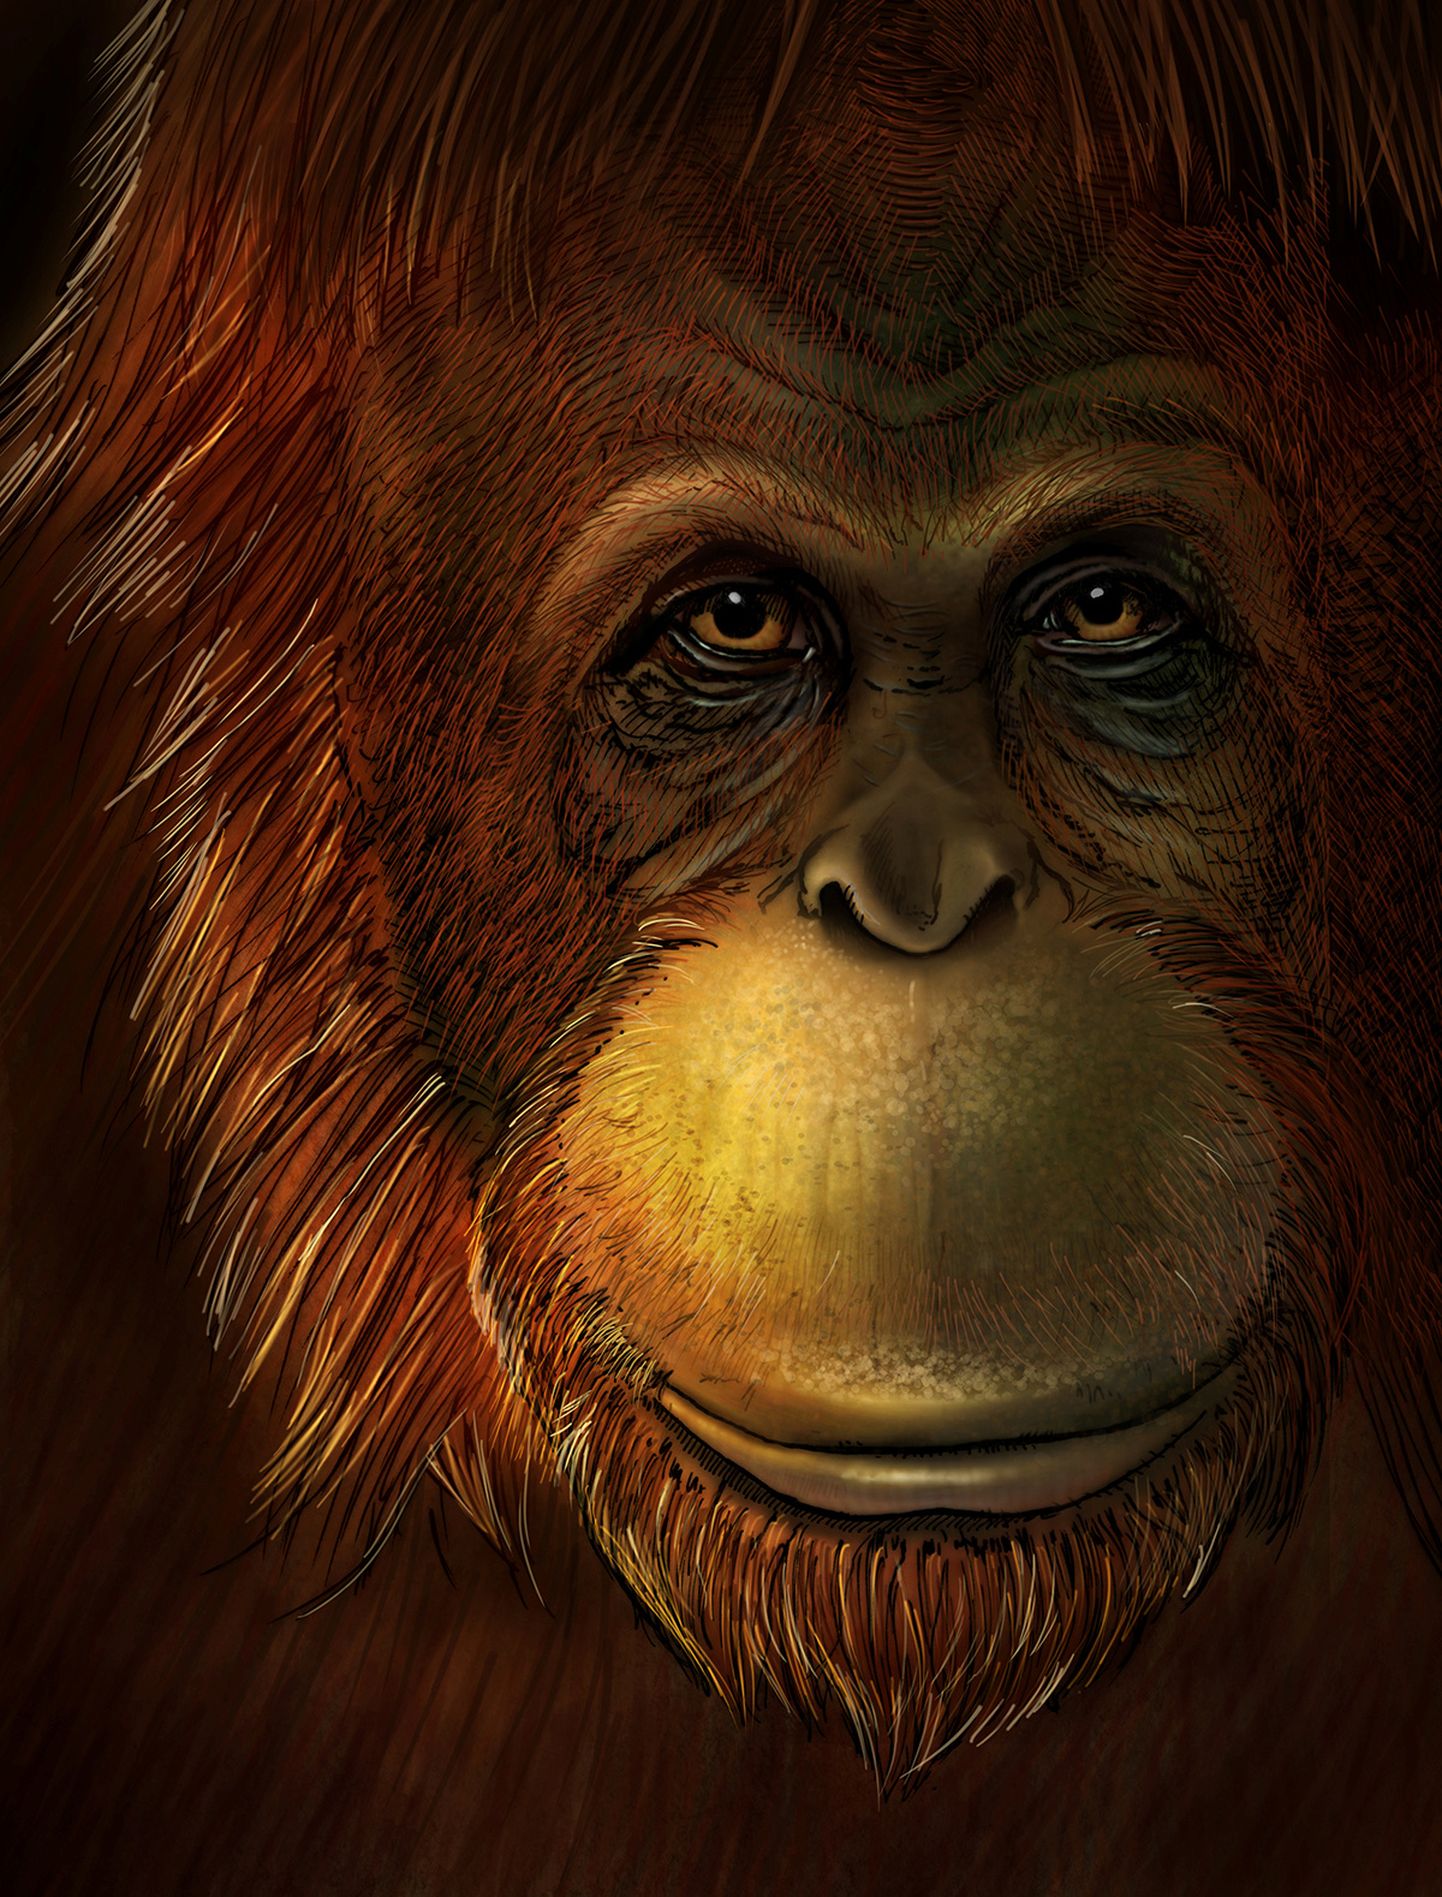 Kunstniku joonistus hiigelahvist Gigantopithecus blacki'st